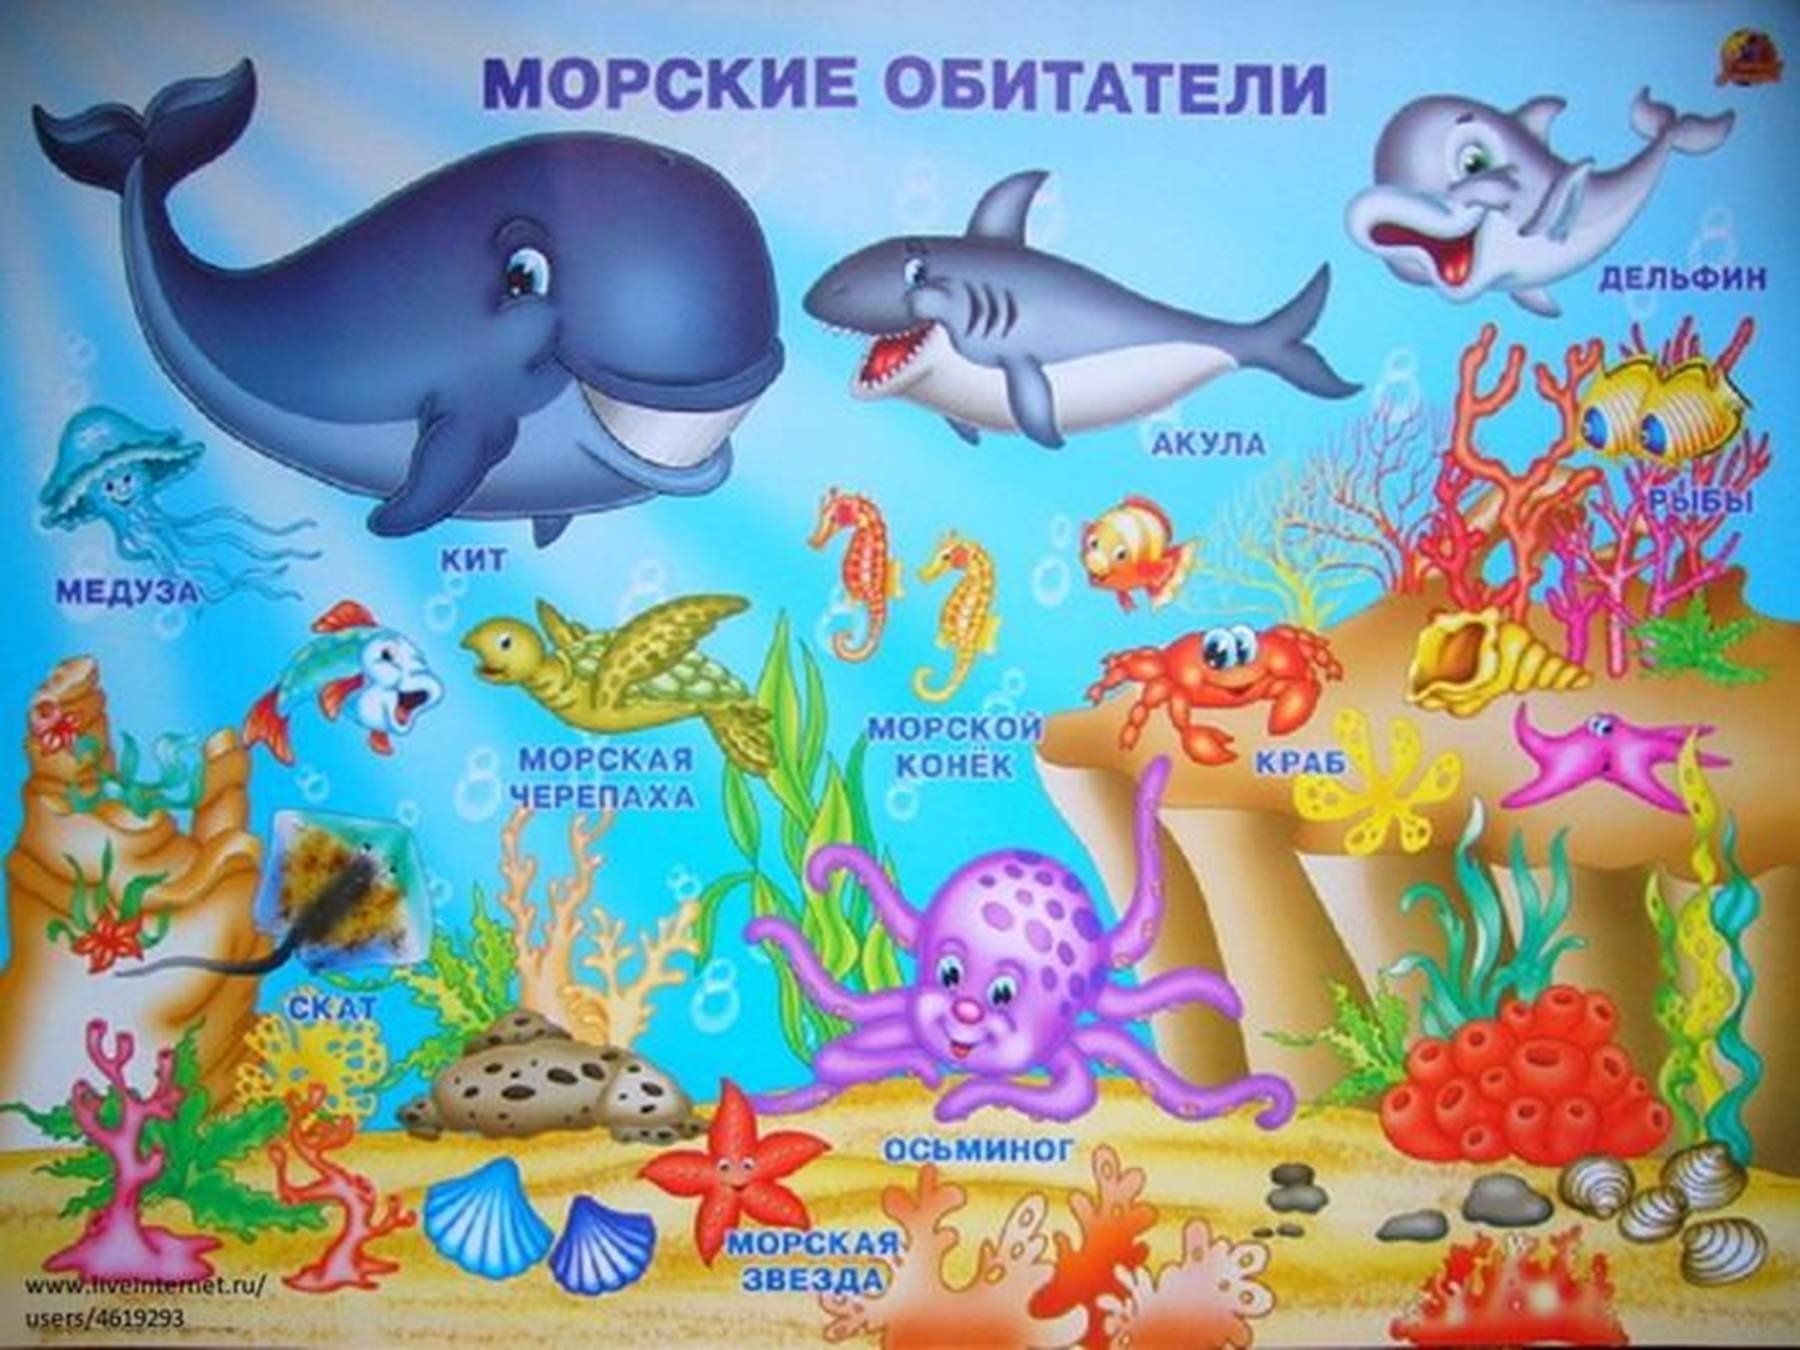 Морские беседы. Морские обитатели для детей. Плакат морские обитатели для детей. Морские жители для детей. Подводный мир морские обитатели для детей.